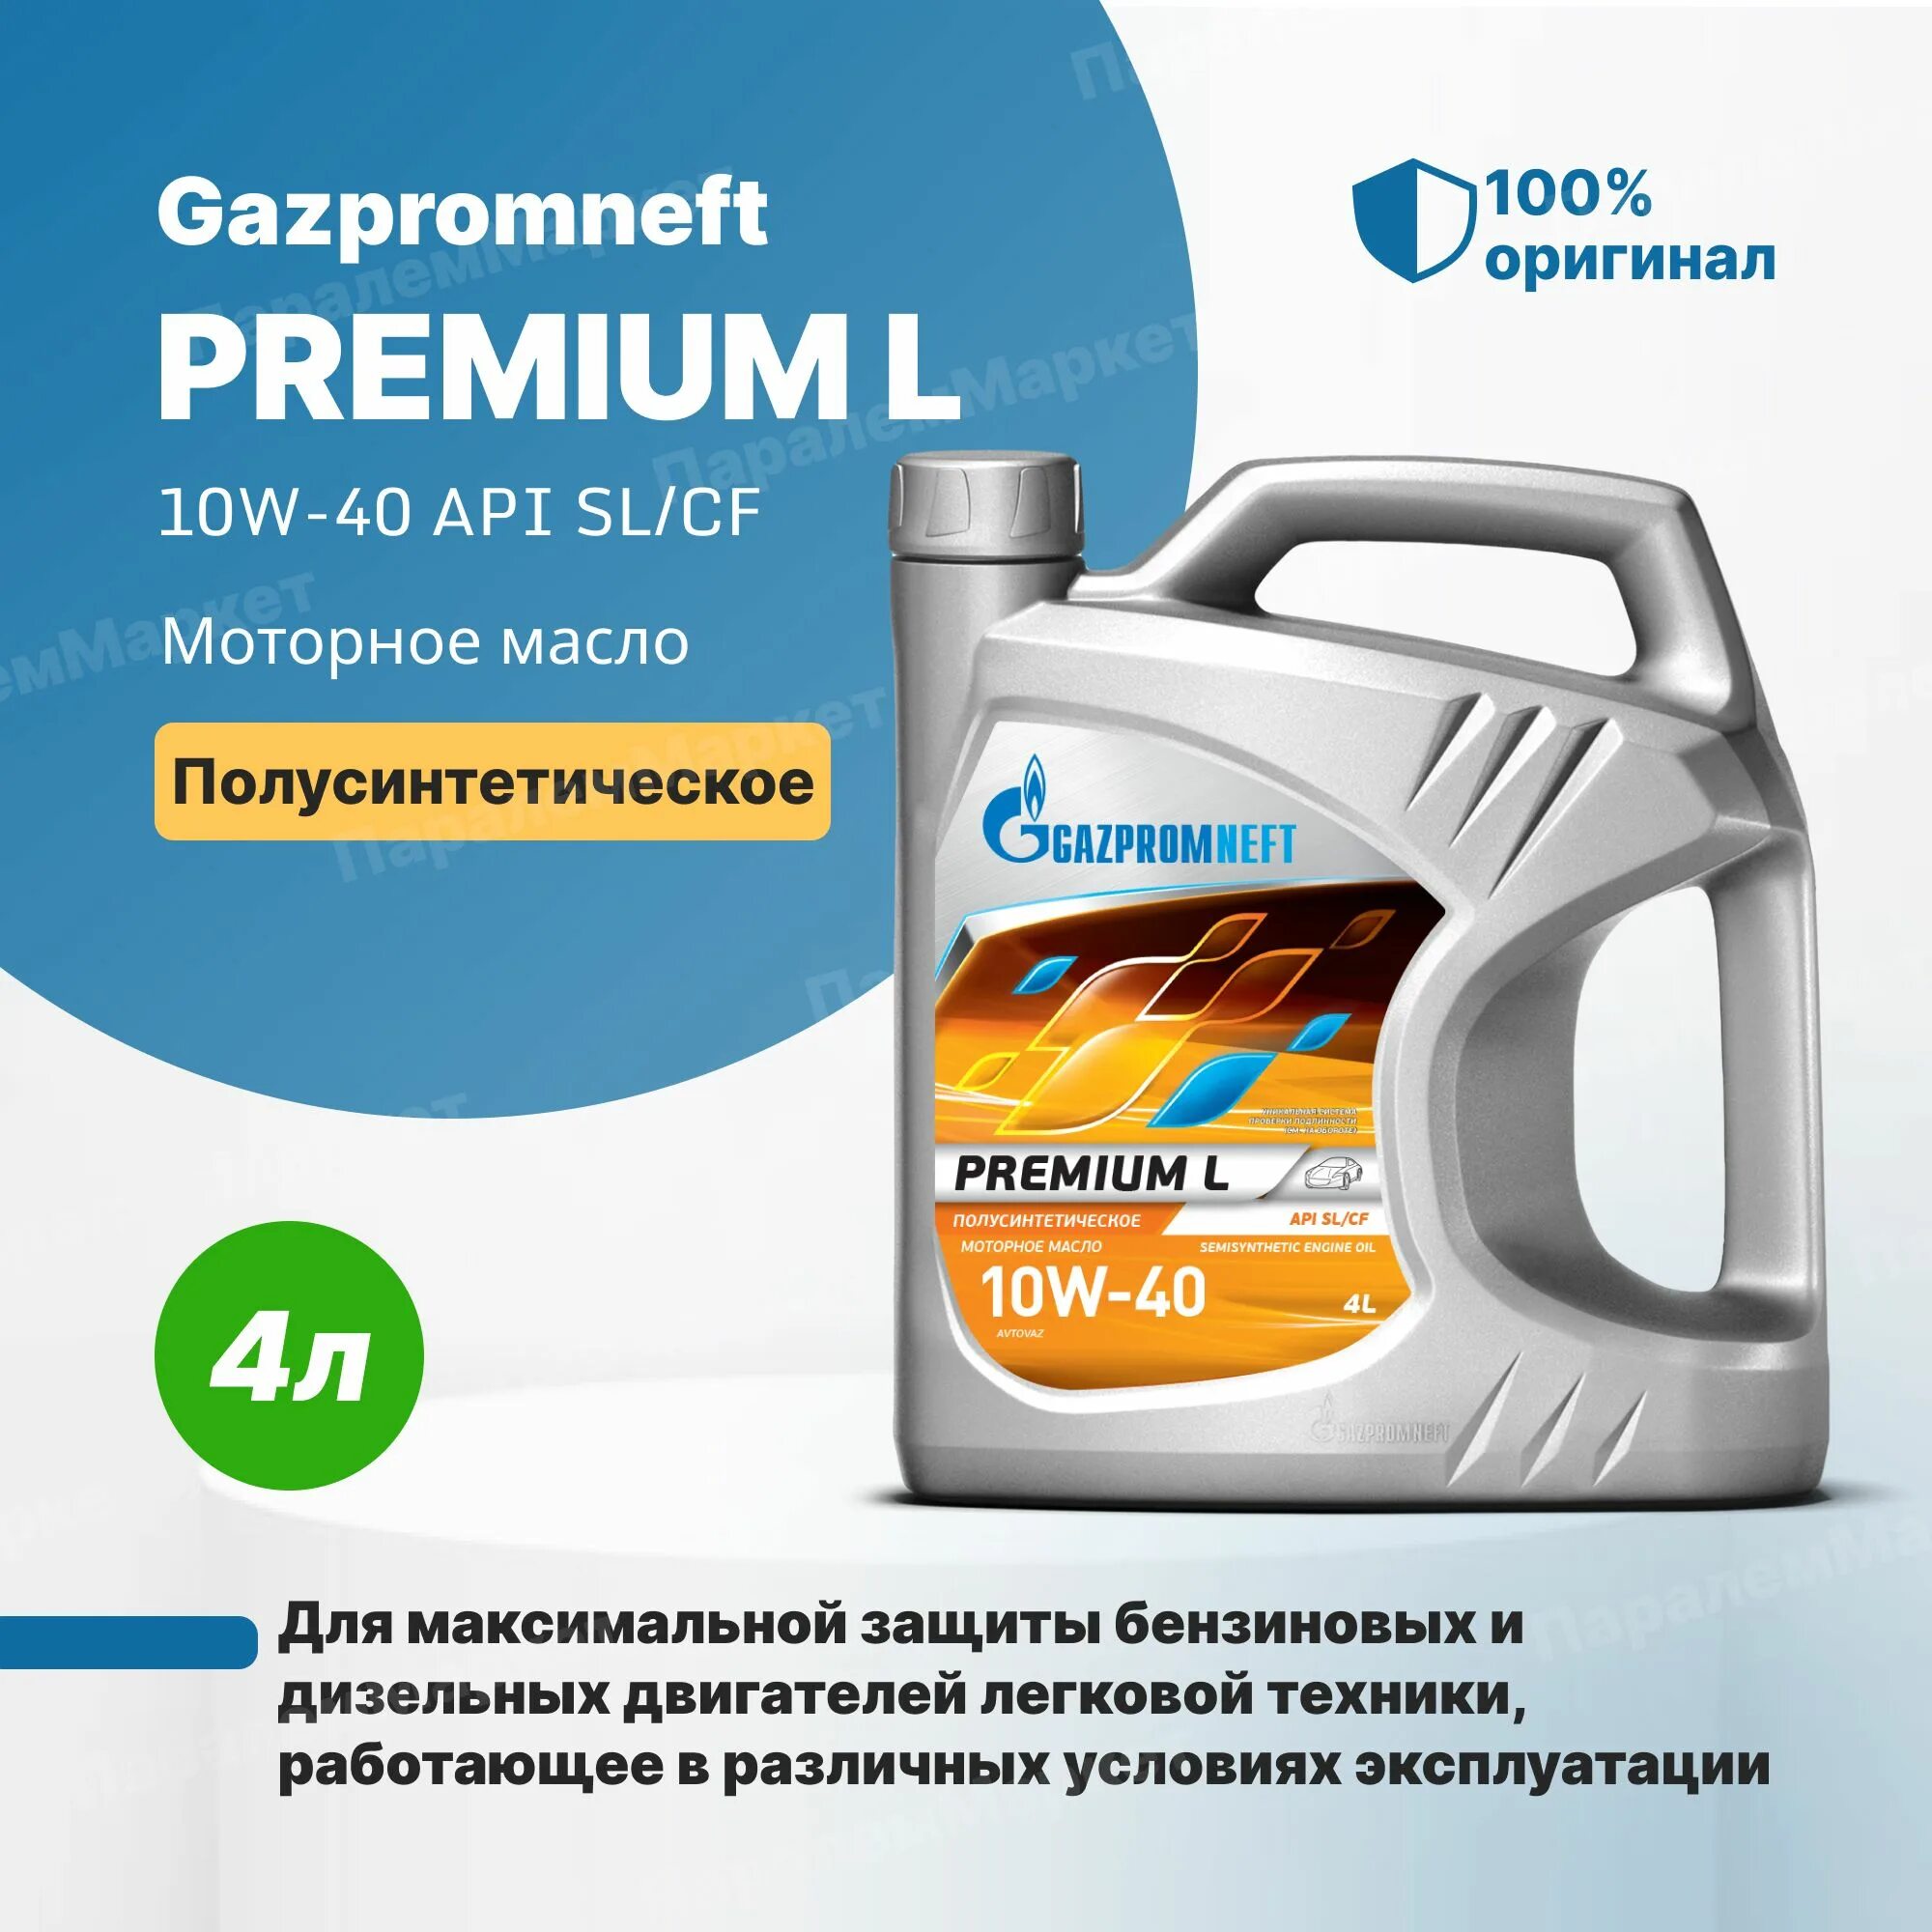 Масло газпромнефть премиум 10w 40. Gazpromneft масло моторное Premium l 10w-40 полусинтетическое 4 л. Газпромнефть премиум л 10w-40. Масло Газпромнефть 10w 40 премиум л.